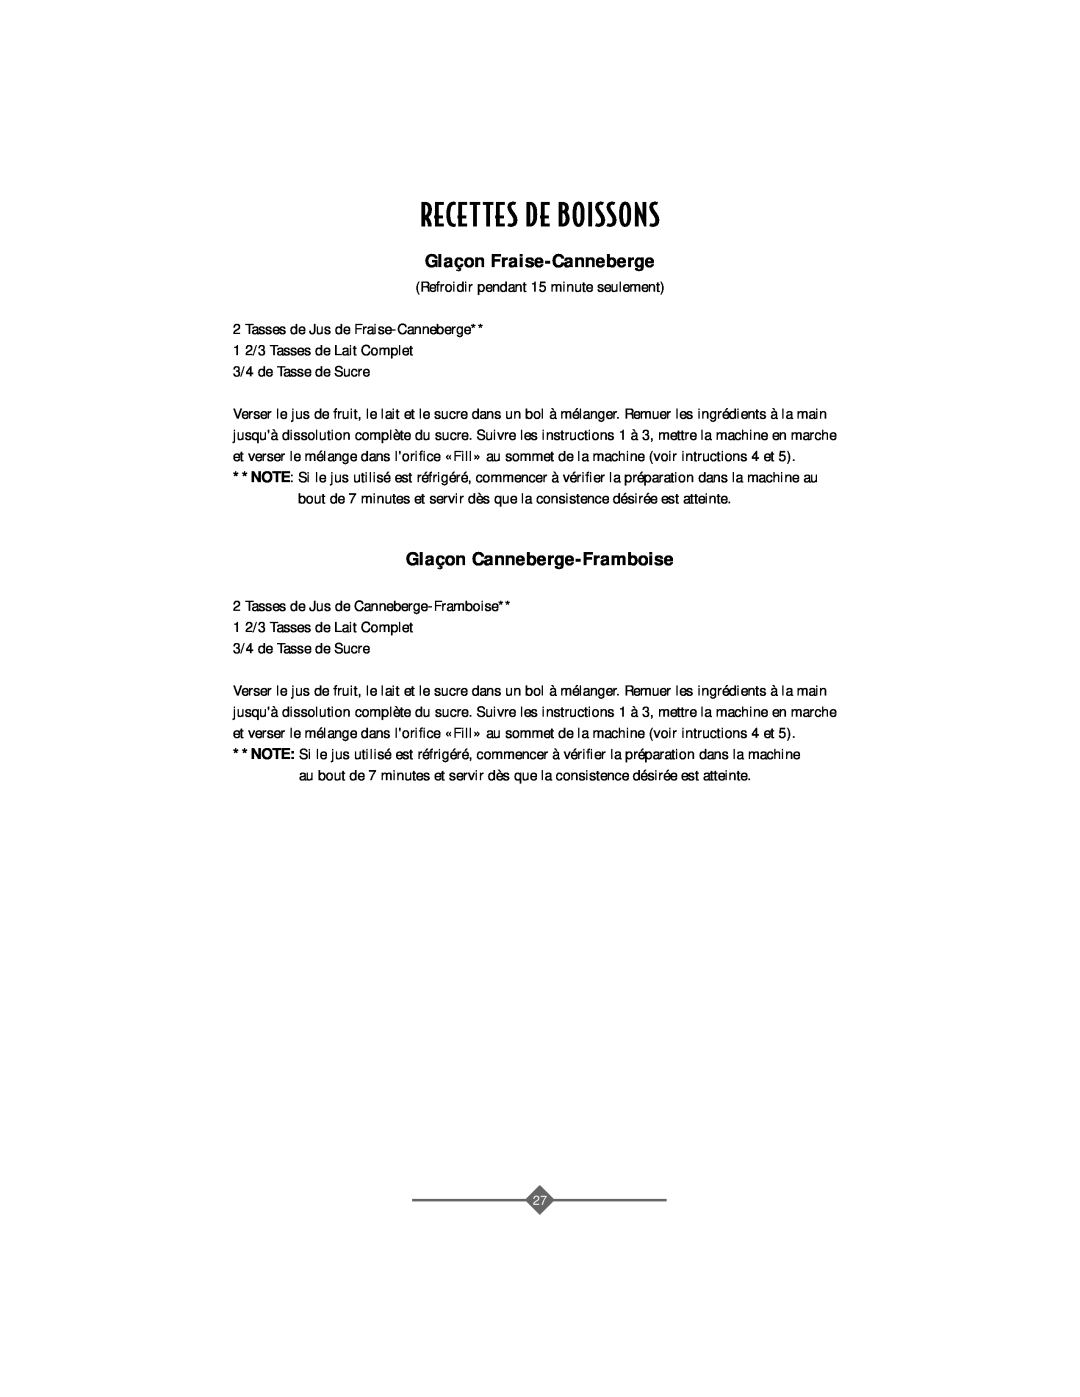 Sunbeam 4742, 4743 instruction manual Recettes De Boissons, Glaçon Fraise-Canneberge, Glaçon Canneberge-Framboise 